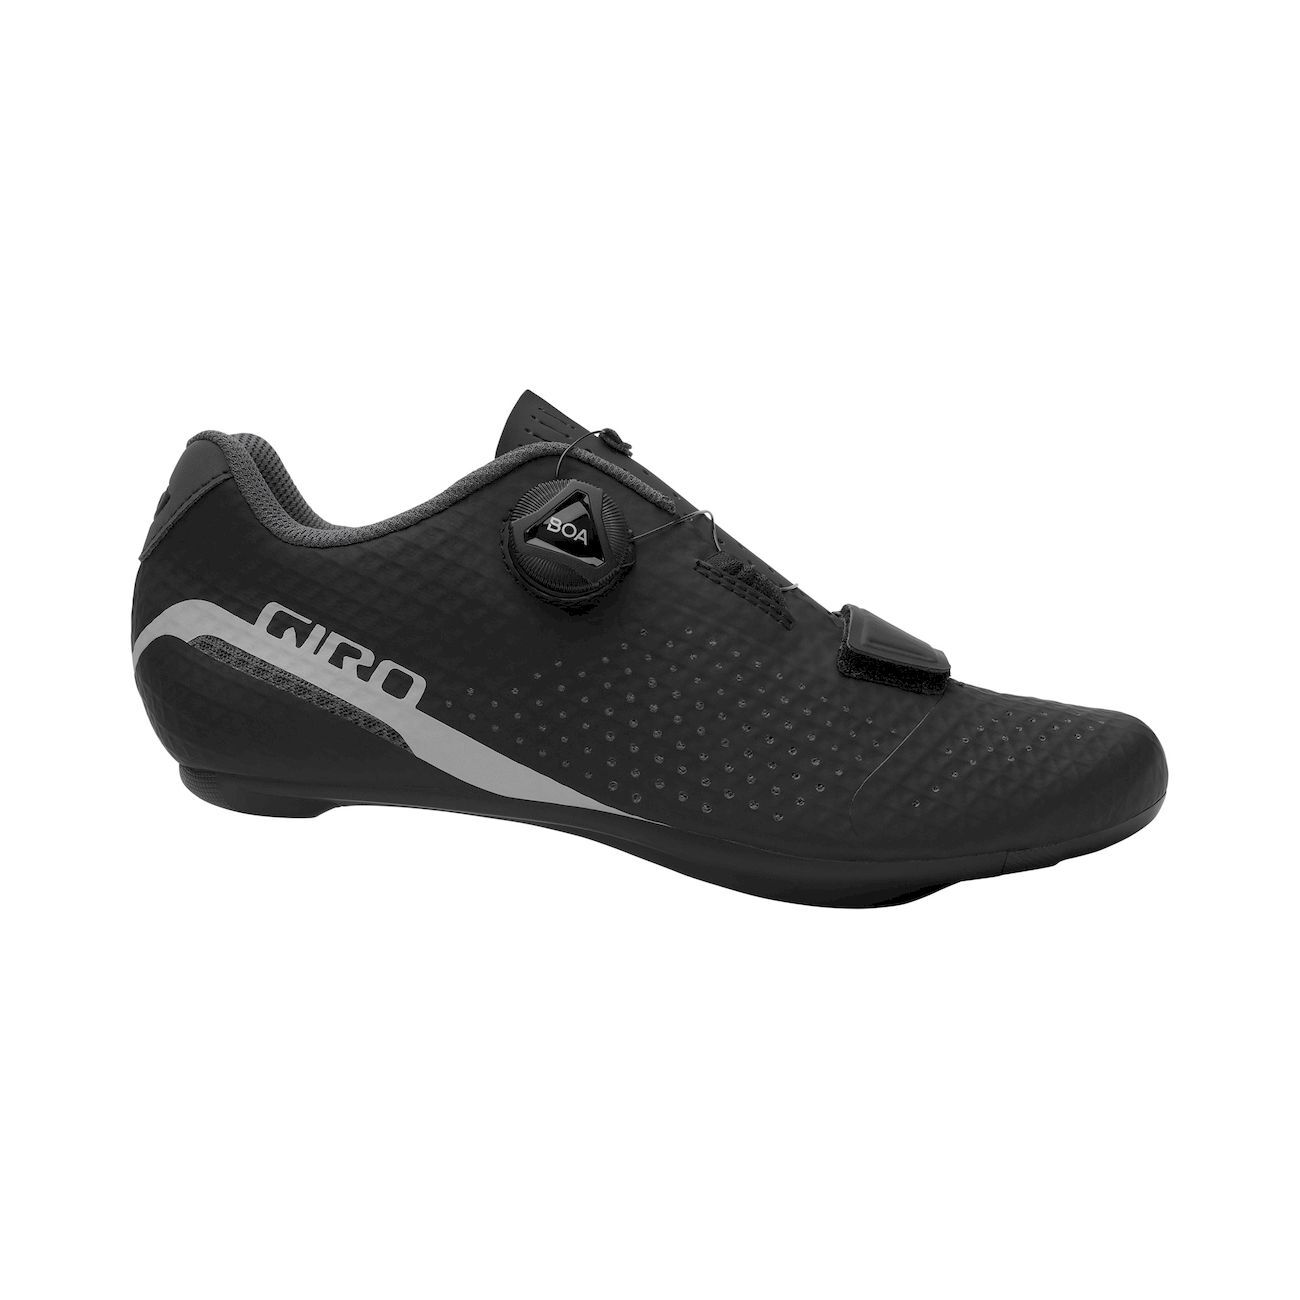 Giro Cadet - Racefiets schoenen - Dames